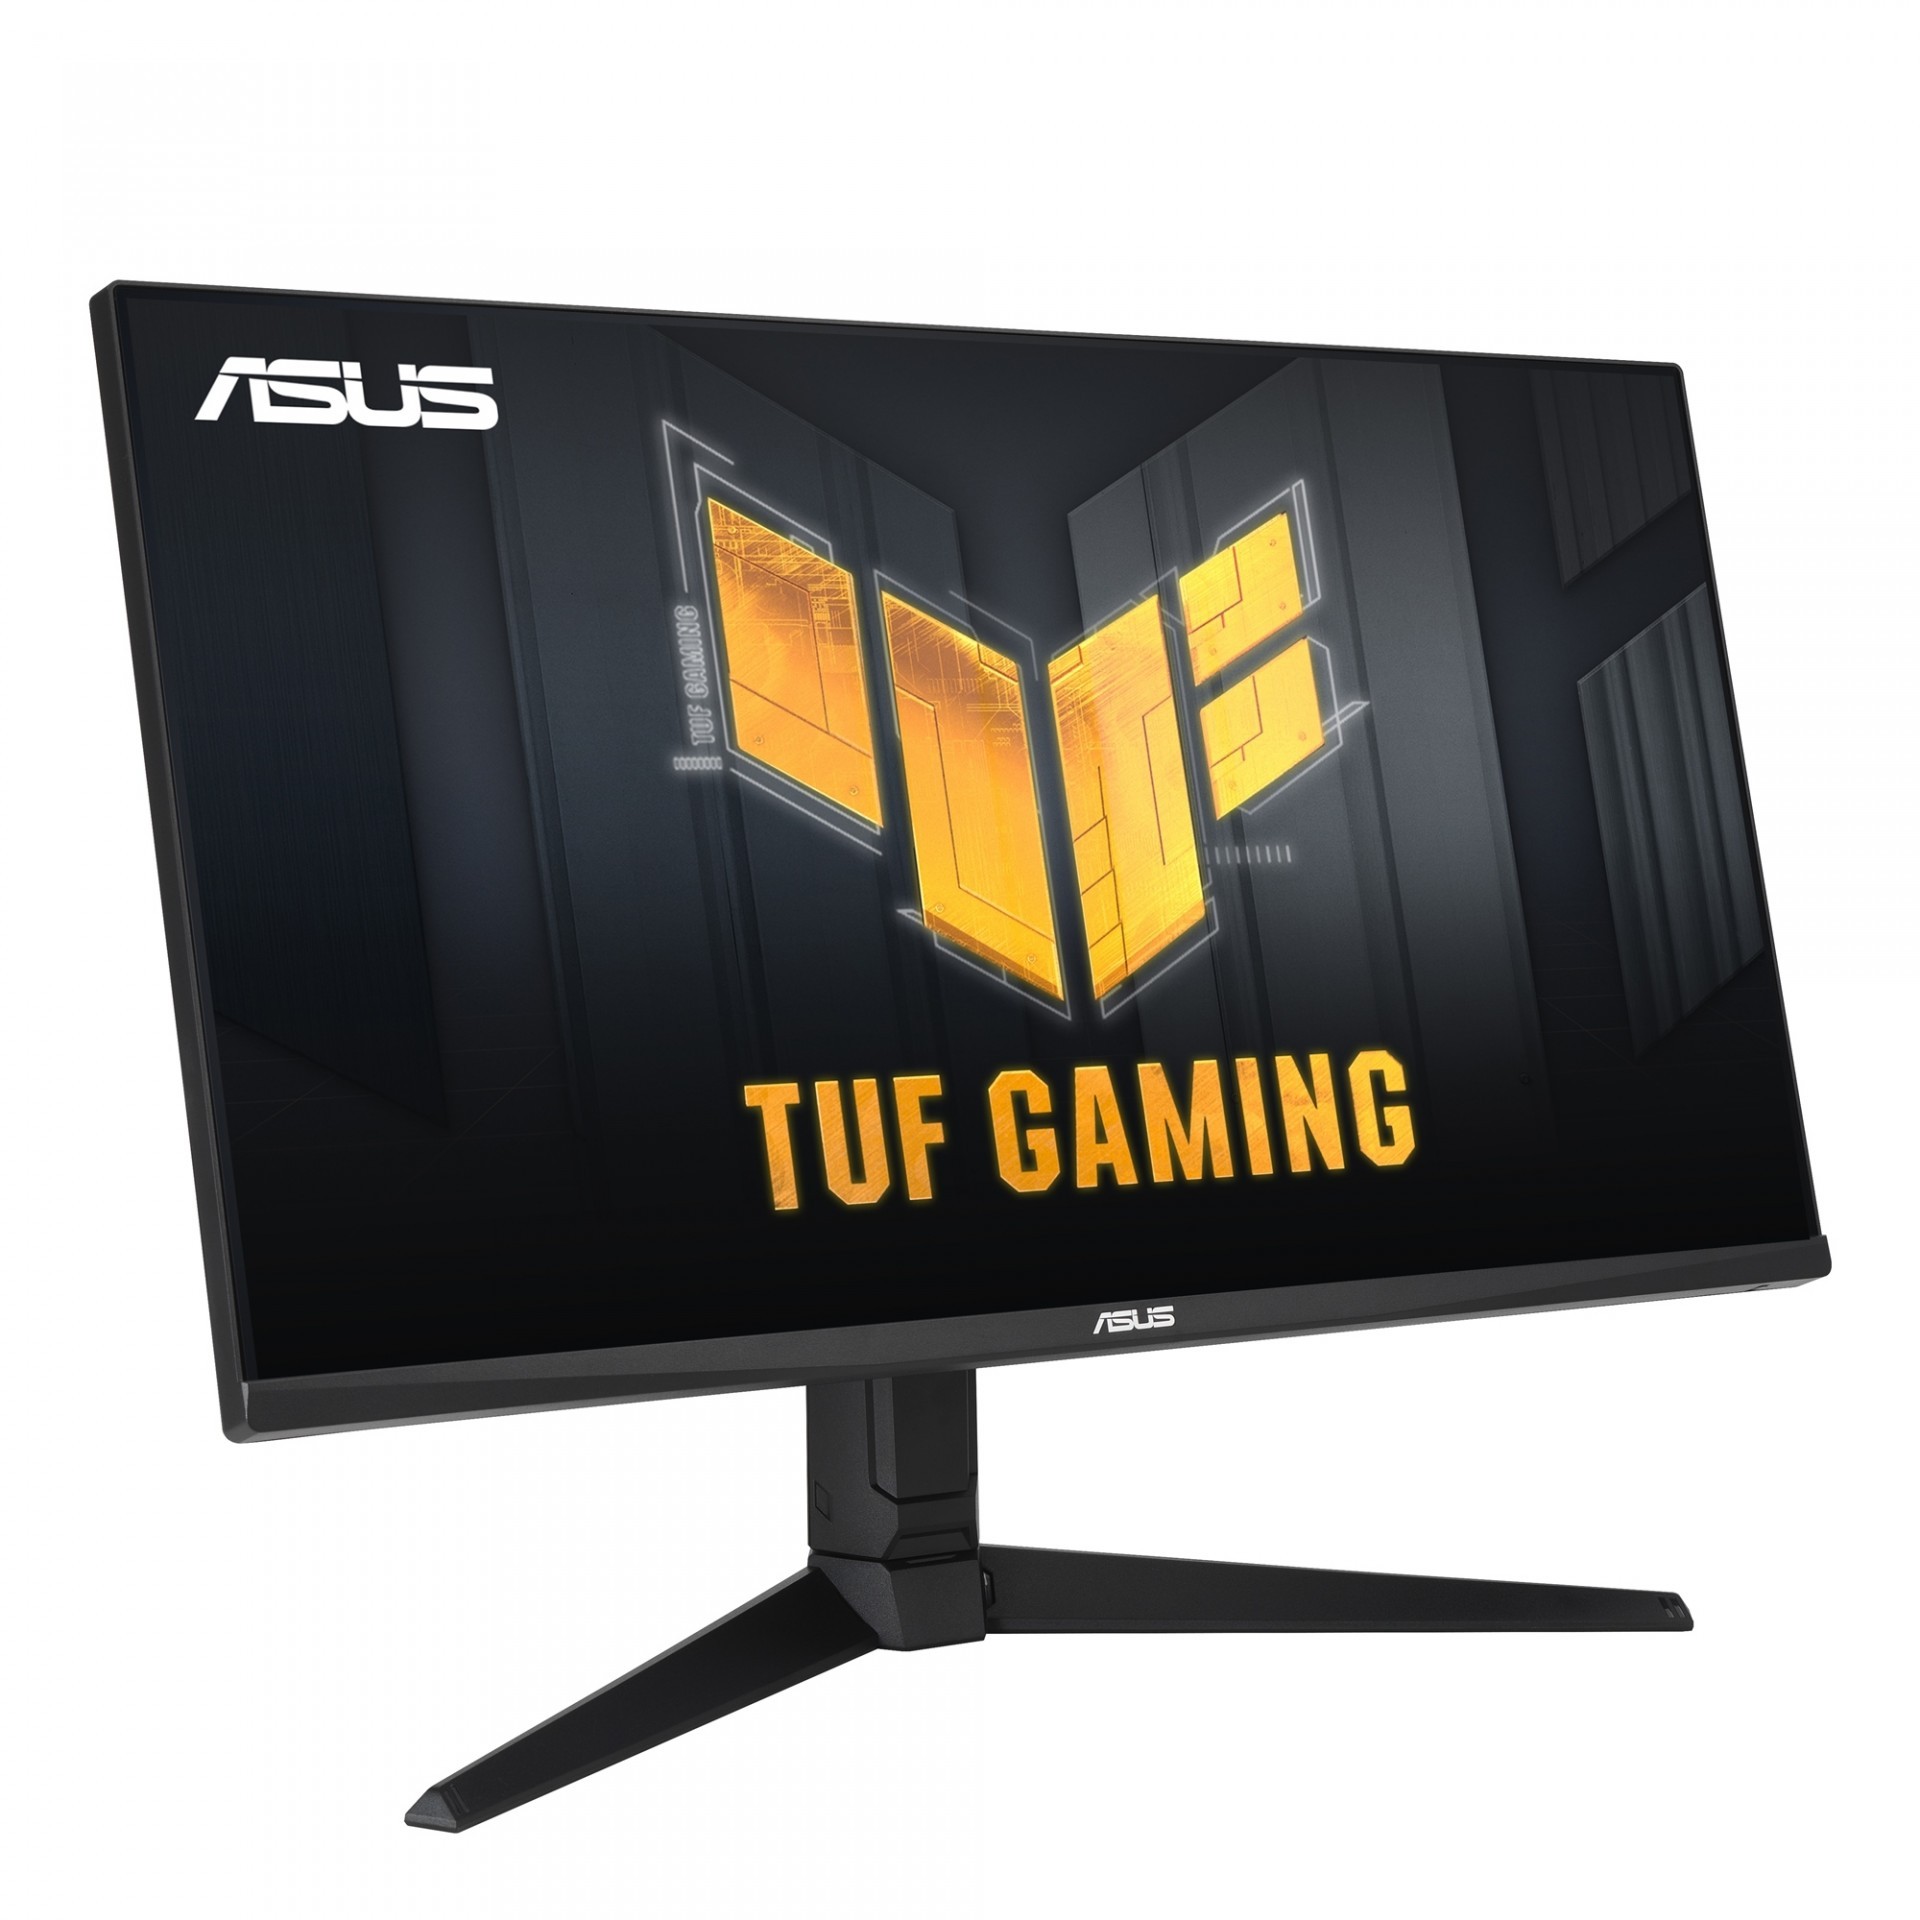 華碩 TUF Gaming VG28UQL1A 電競螢幕上市